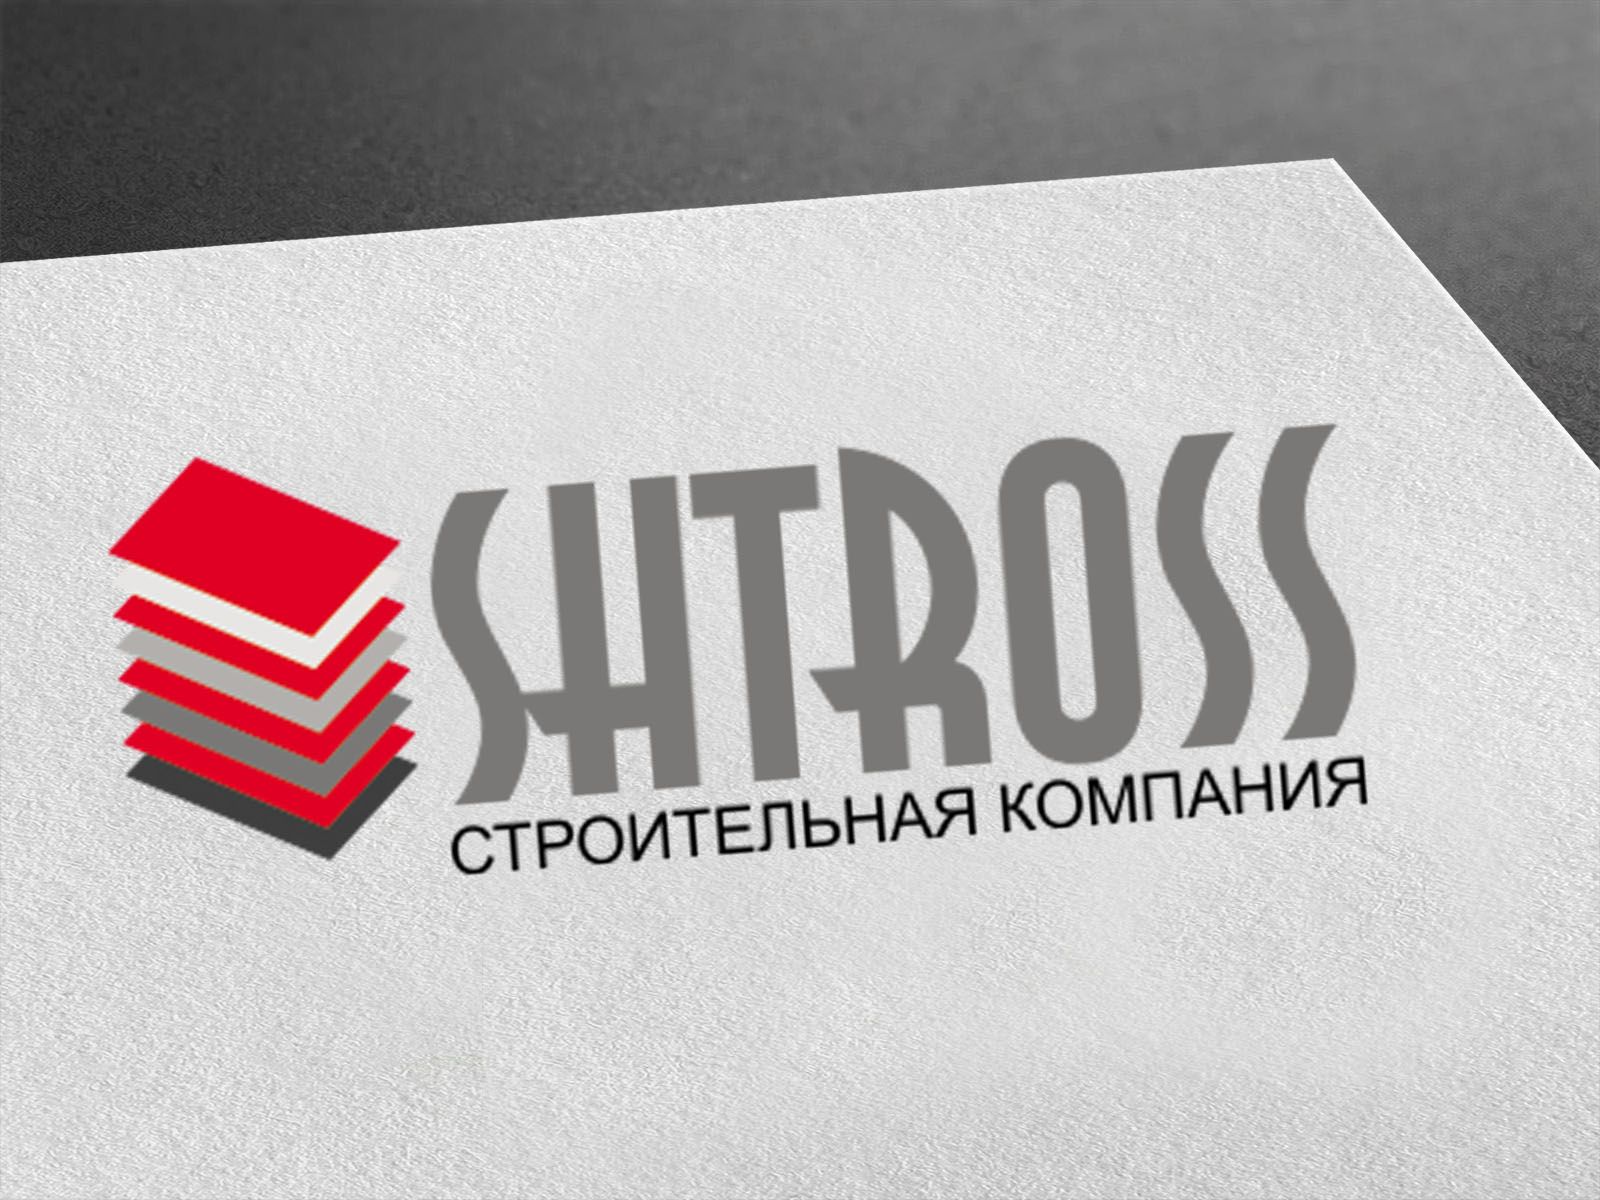 Логотип для строительной компании SHTROSS - дизайнер poch-home